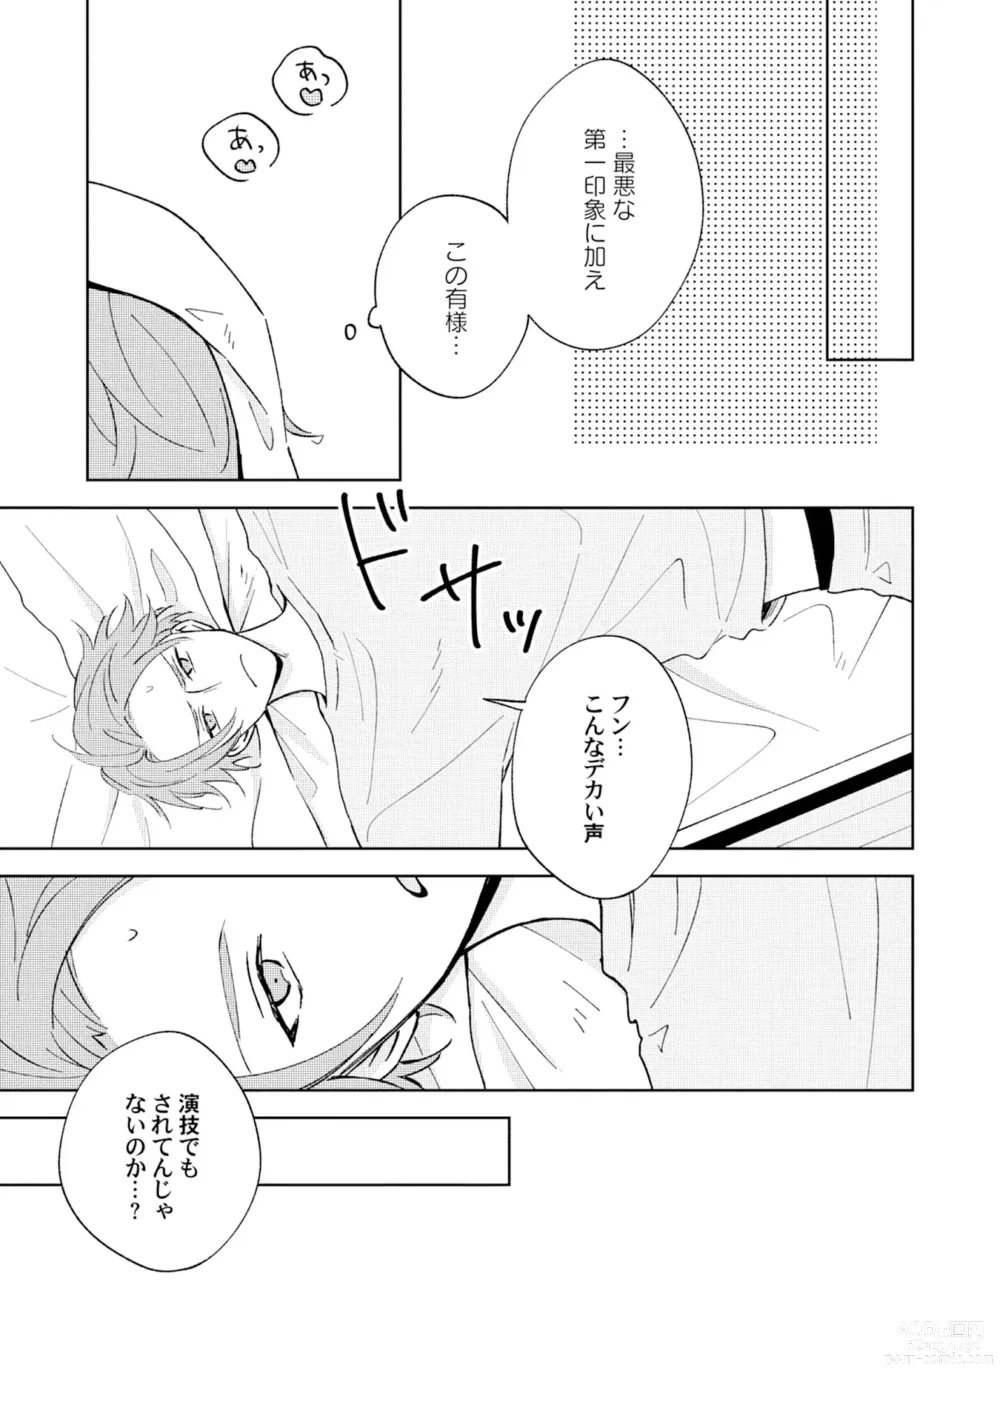 Page 9 of manga Toho 3-byou no Trouble Love Room 1